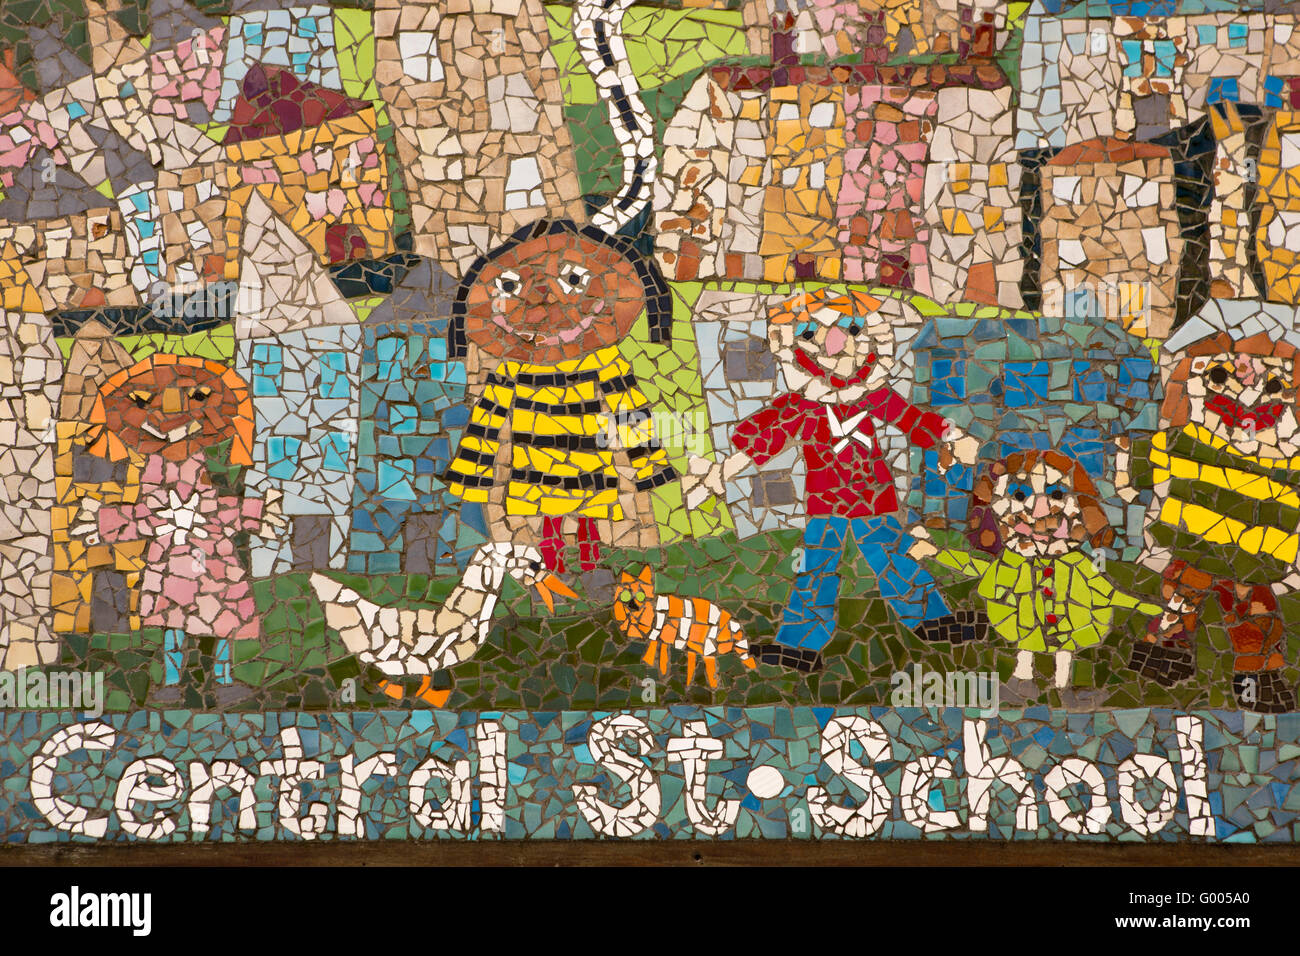 Royaume-uni, Angleterre, dans le Yorkshire, Calderdale Hebden Bridge, l'École de la rue centrale, signe d'enfants de la mosaïque, les canards et les cat Banque D'Images